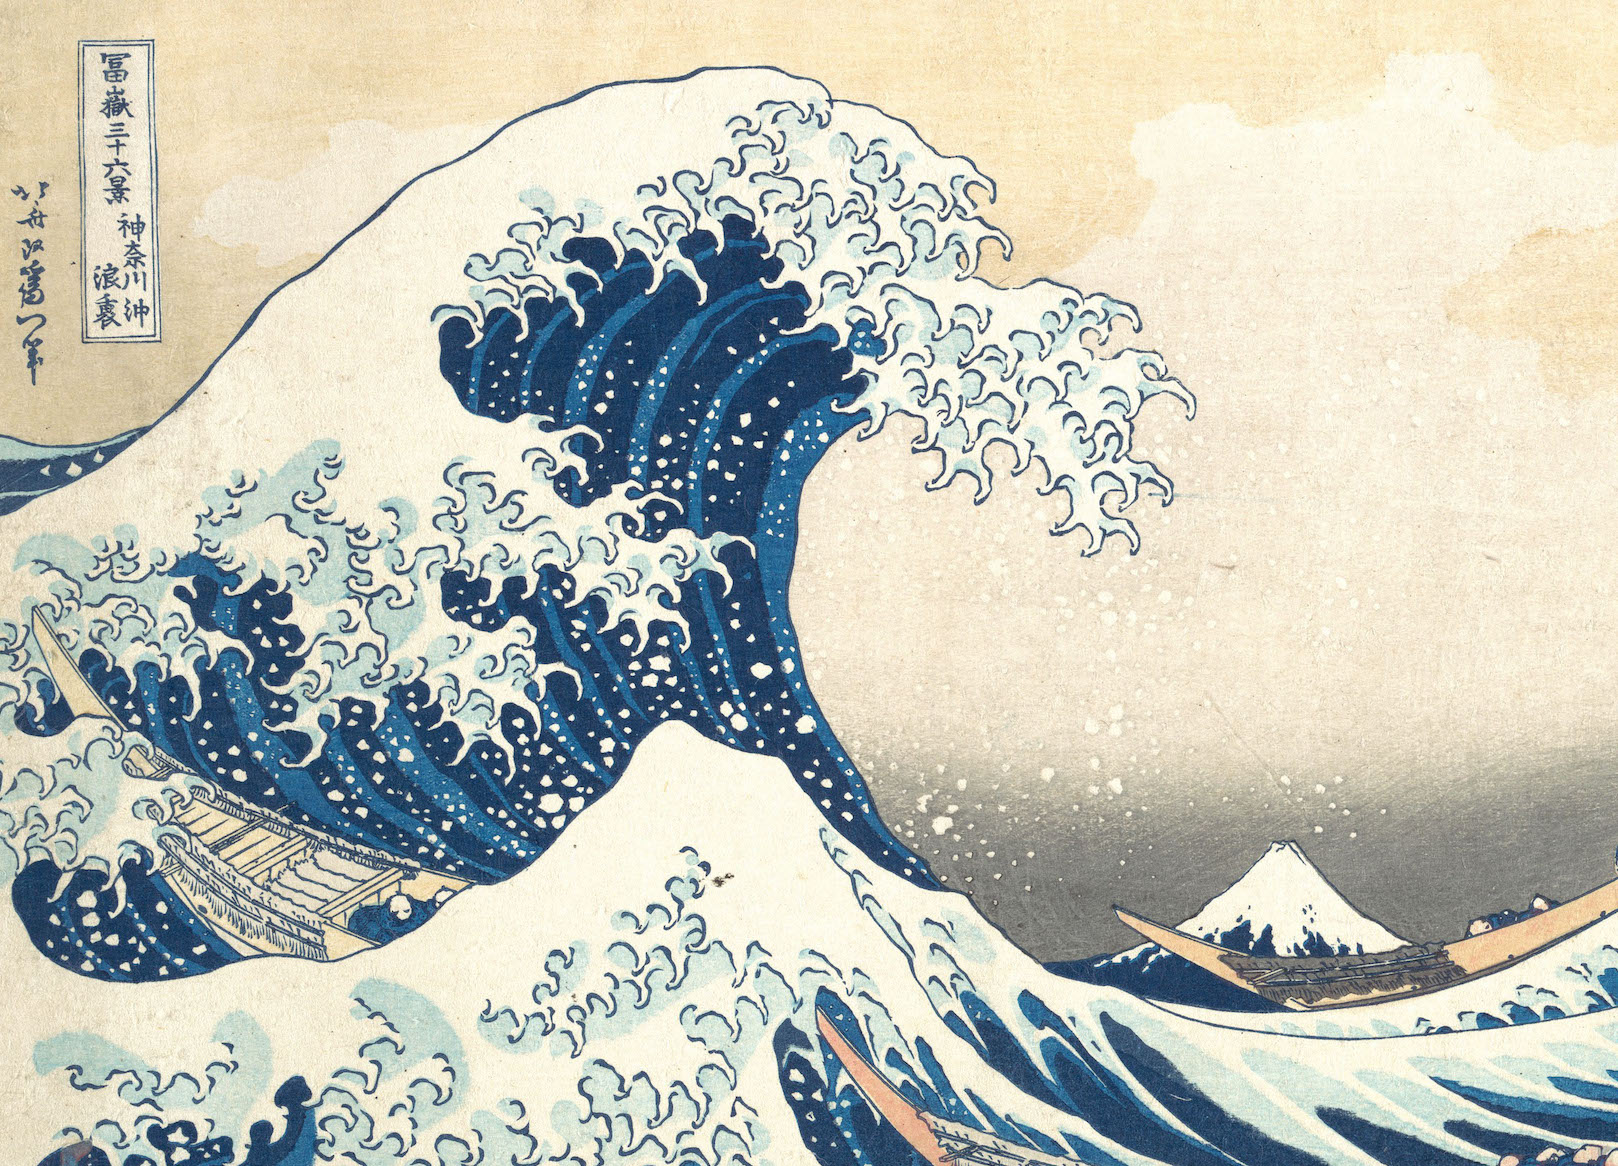 tsunami by Hokusai